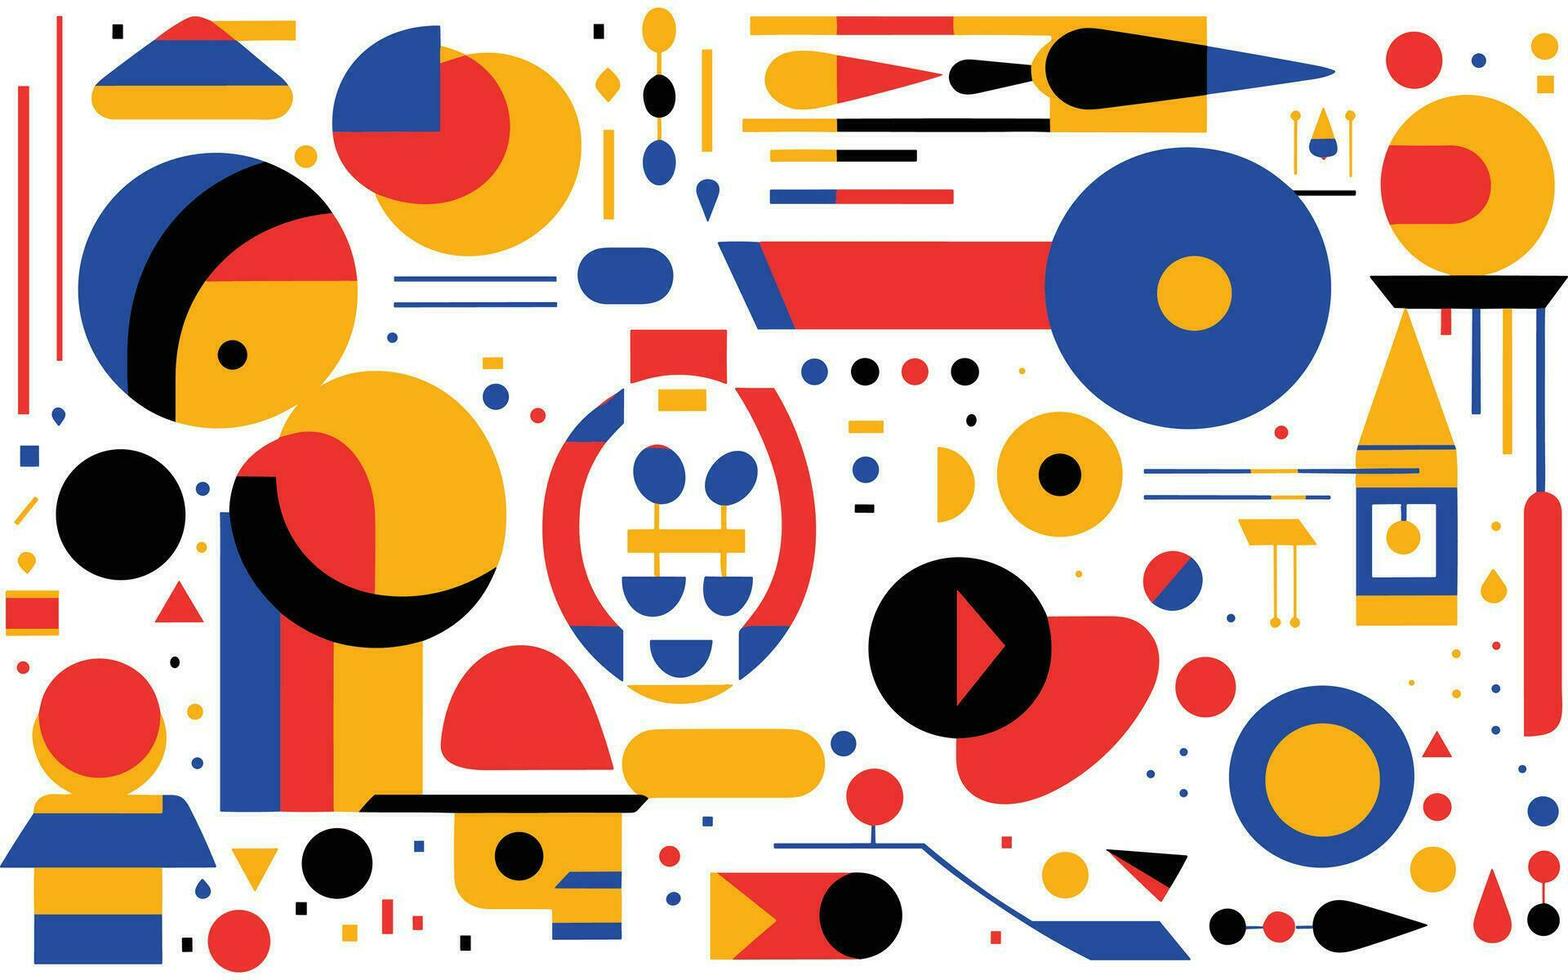 kleurrijk meetkundig patronen en vormen, in de stijl van stoutmoedig contouren, vlak kleuren, robot motieven, stoutmoedig patronen en typografie, abstract eenvoud, bauhaus eenvoud, Afrikaanse patronen vector